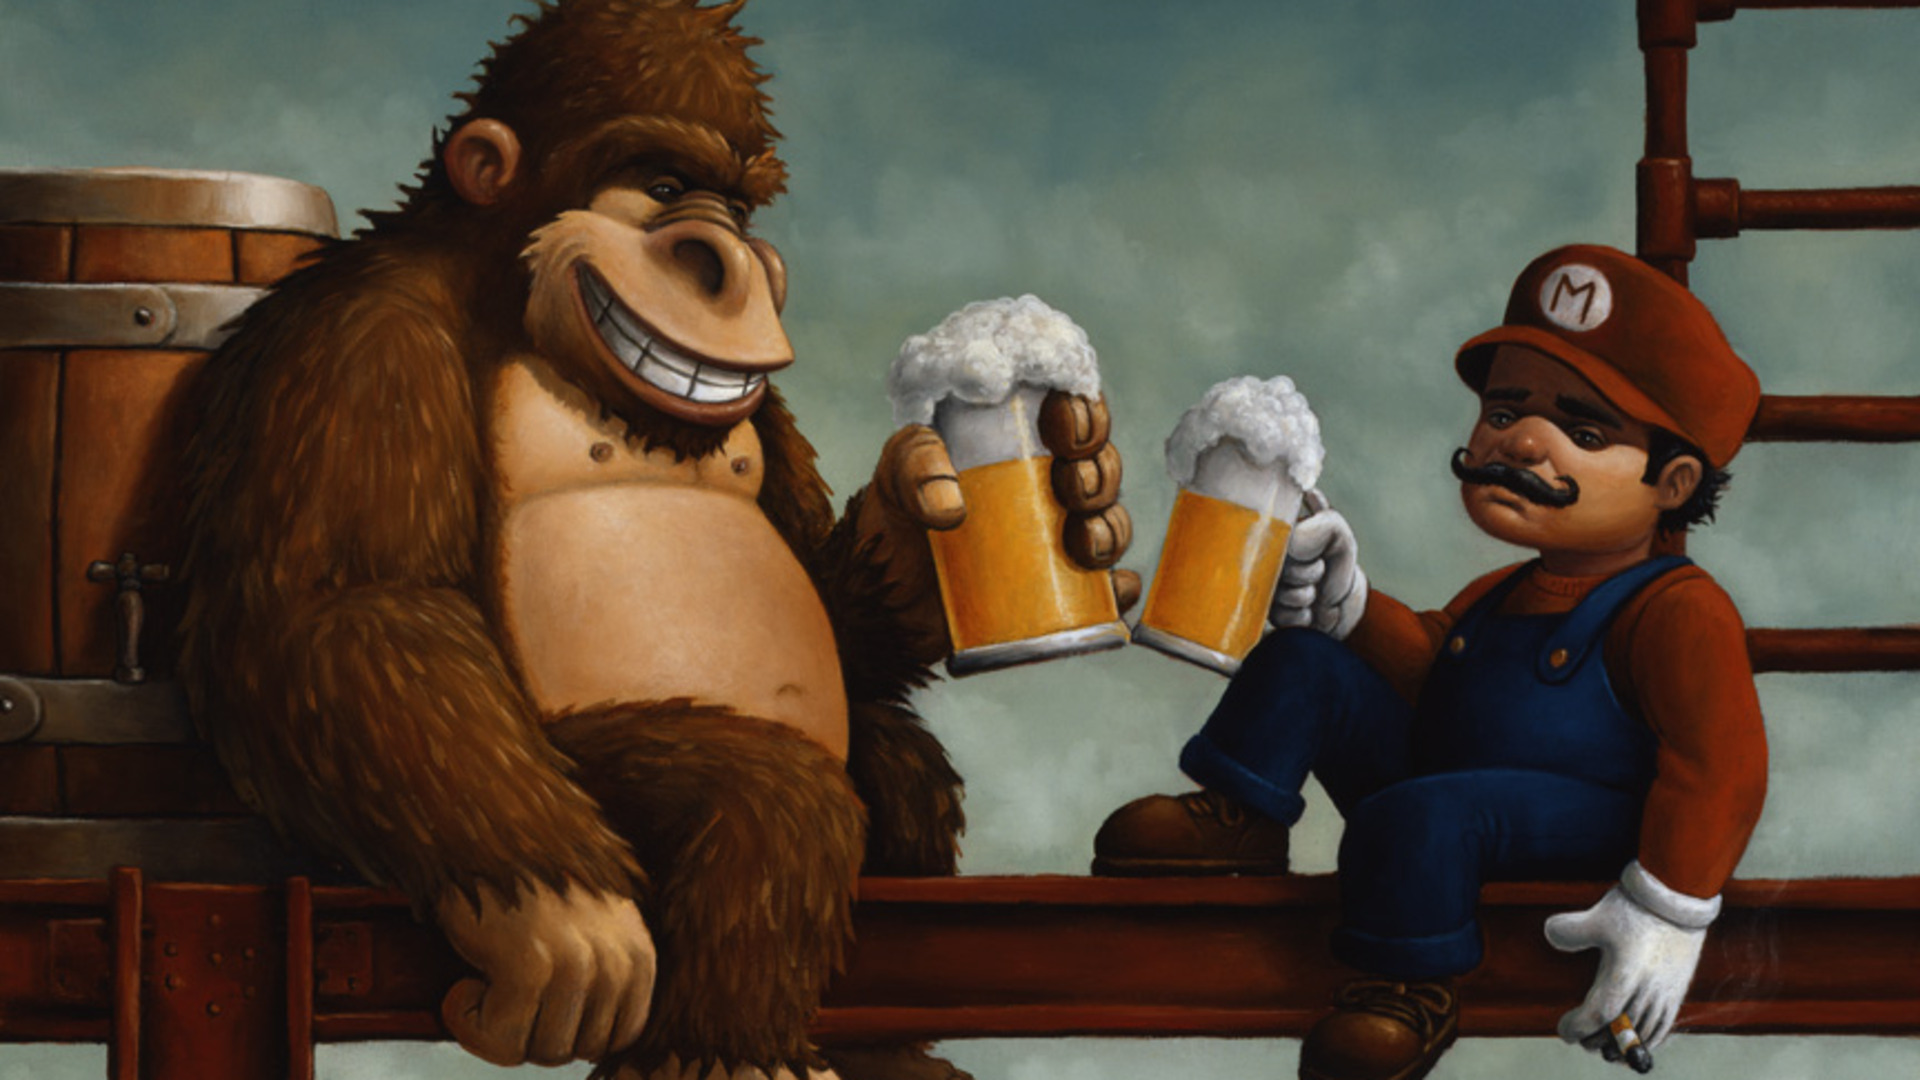 Нинтендо, пиво, видеоигры, Марио, алкоголь, Donkey Kong - обои на рабочий стол